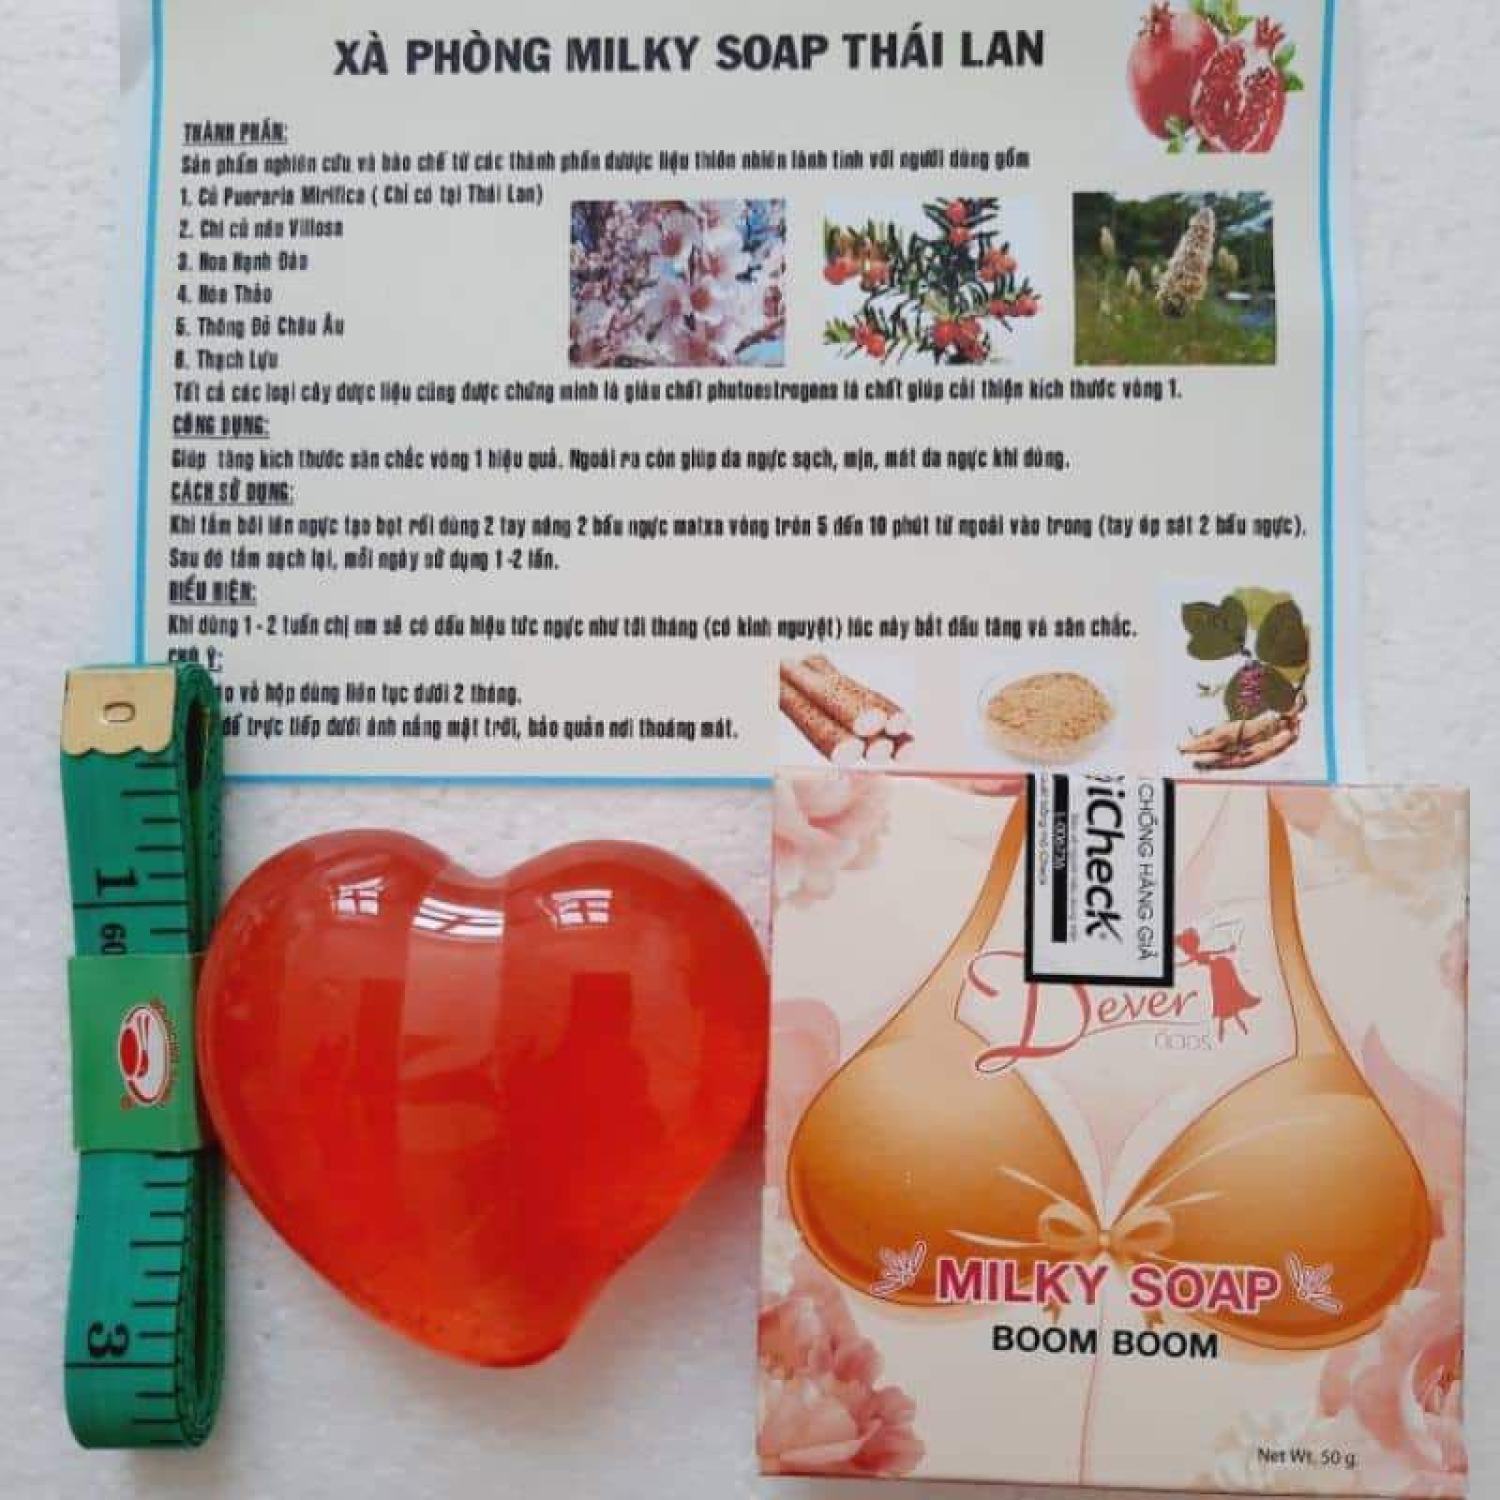 Xà Phòng Nở Ngực, Xà Bông Tăng Vòng 1 Milky Soap Thái Lan Chính Hãng